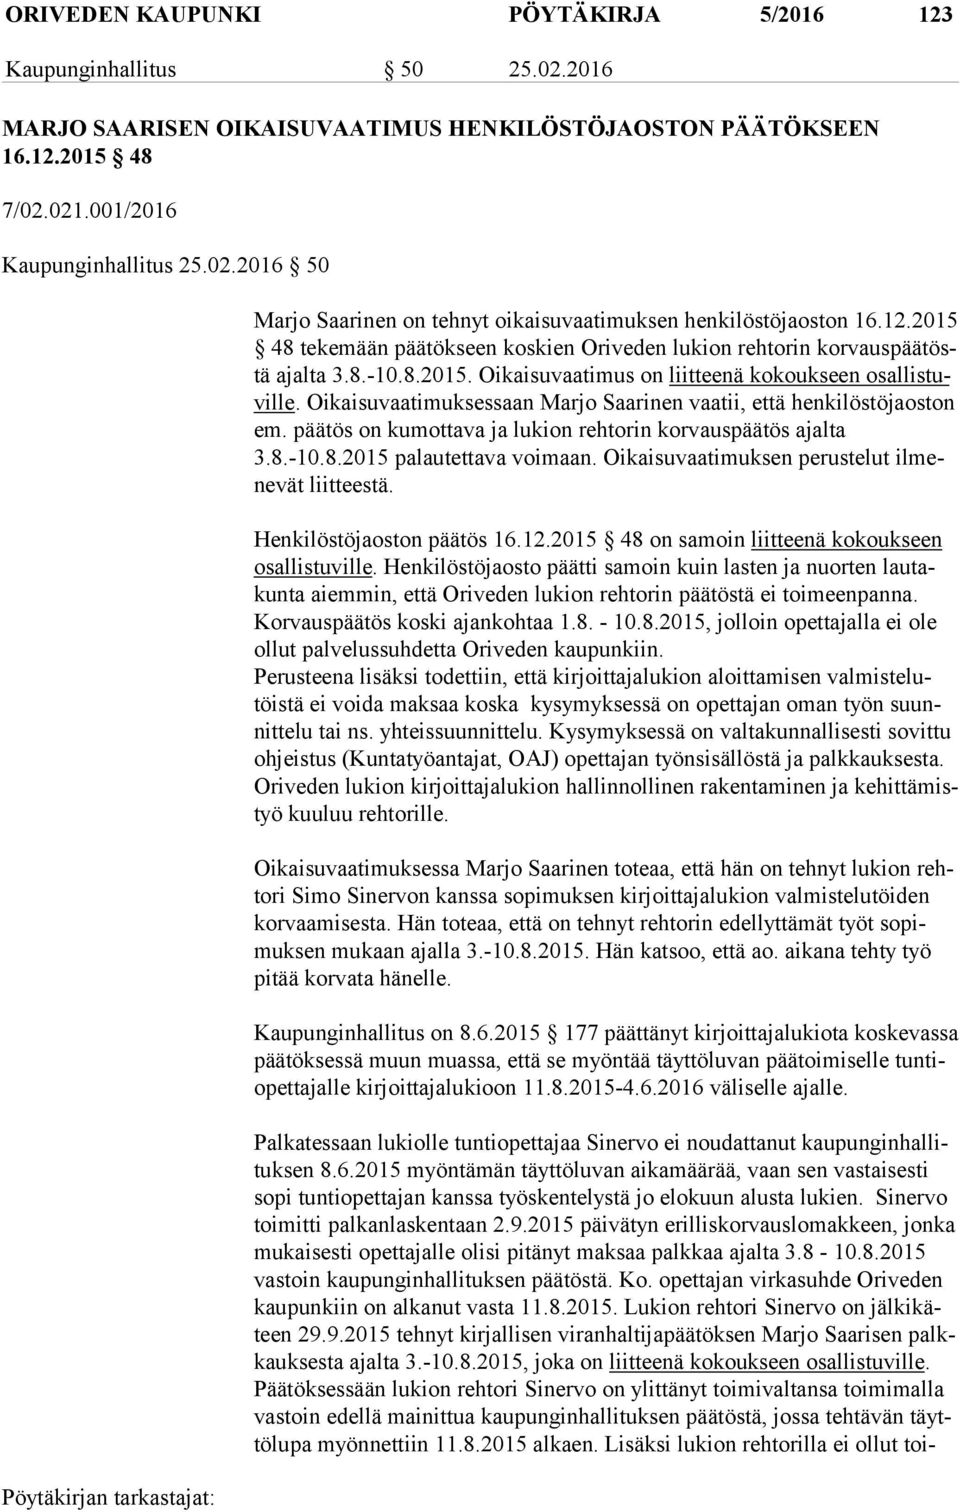 Oikaisuvaatimuksessaan Marjo Saarinen vaatii, että henkilöstöjaoston em. päätös on kumottava ja lukion rehtorin korvauspäätös ajalta 3.8.-10.8.2015 palautettava voimaan.